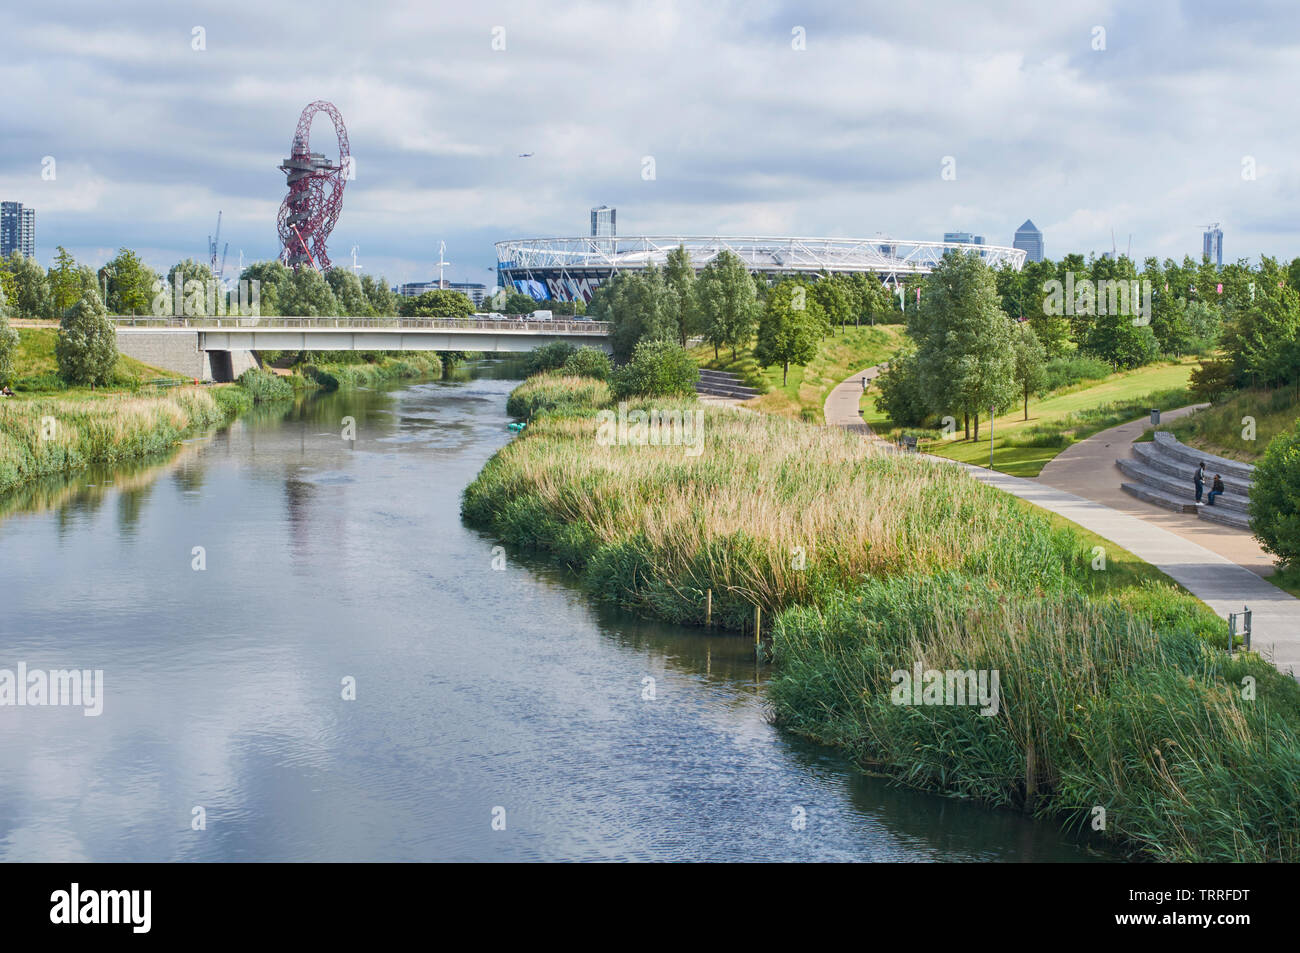 Le nord du Parc olympique de Londres dans les parcs, à la le long de la rivière Lea vers le stade de Londres et l'ArcelorMittal Orbit Banque D'Images